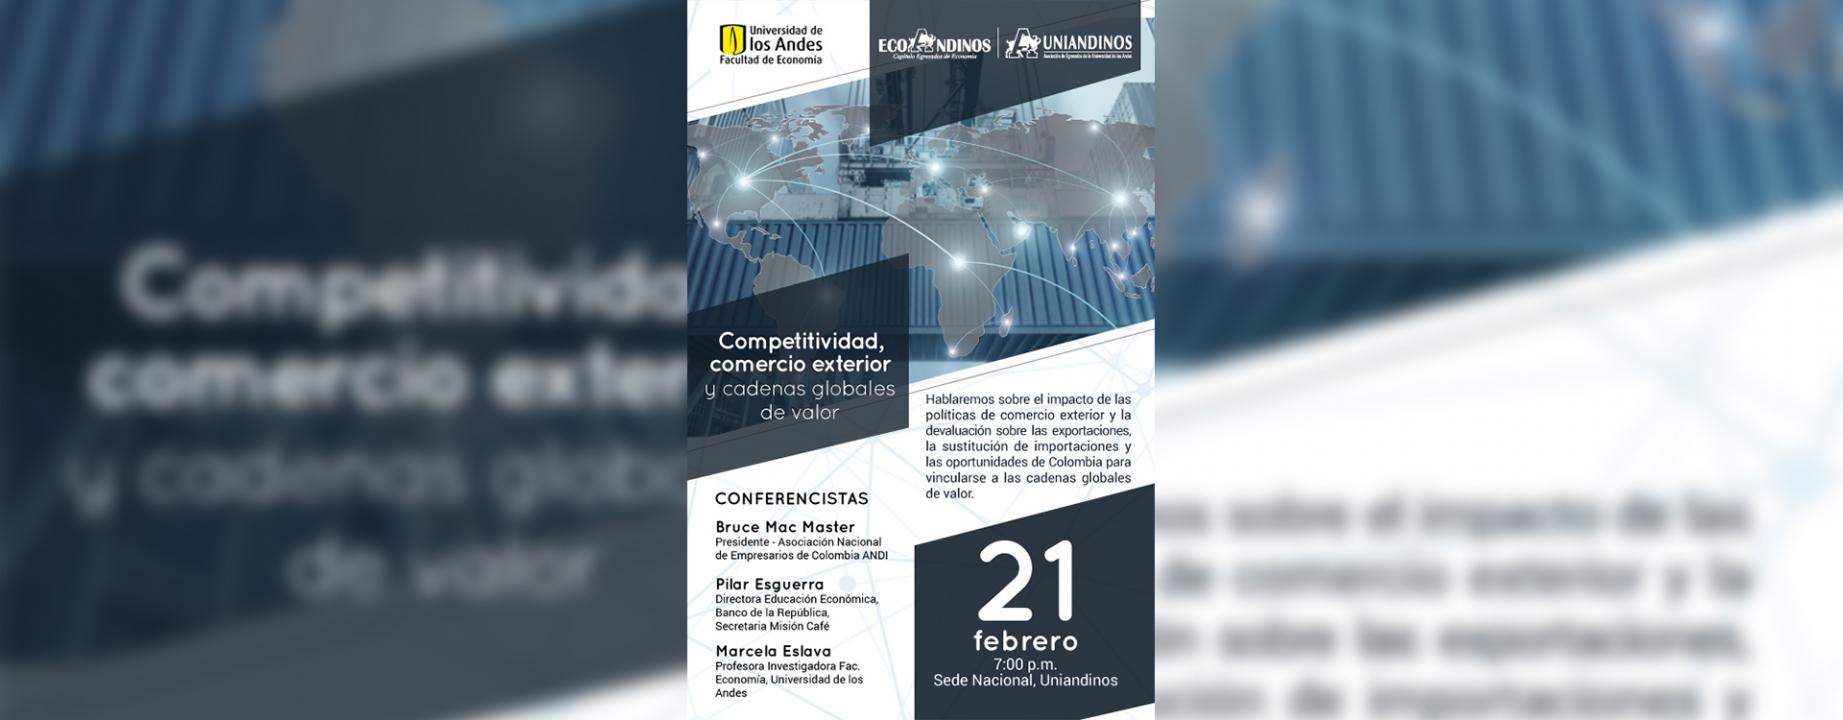 comercio exterior, competitividad, oportunidades de Colombia, exportaciones